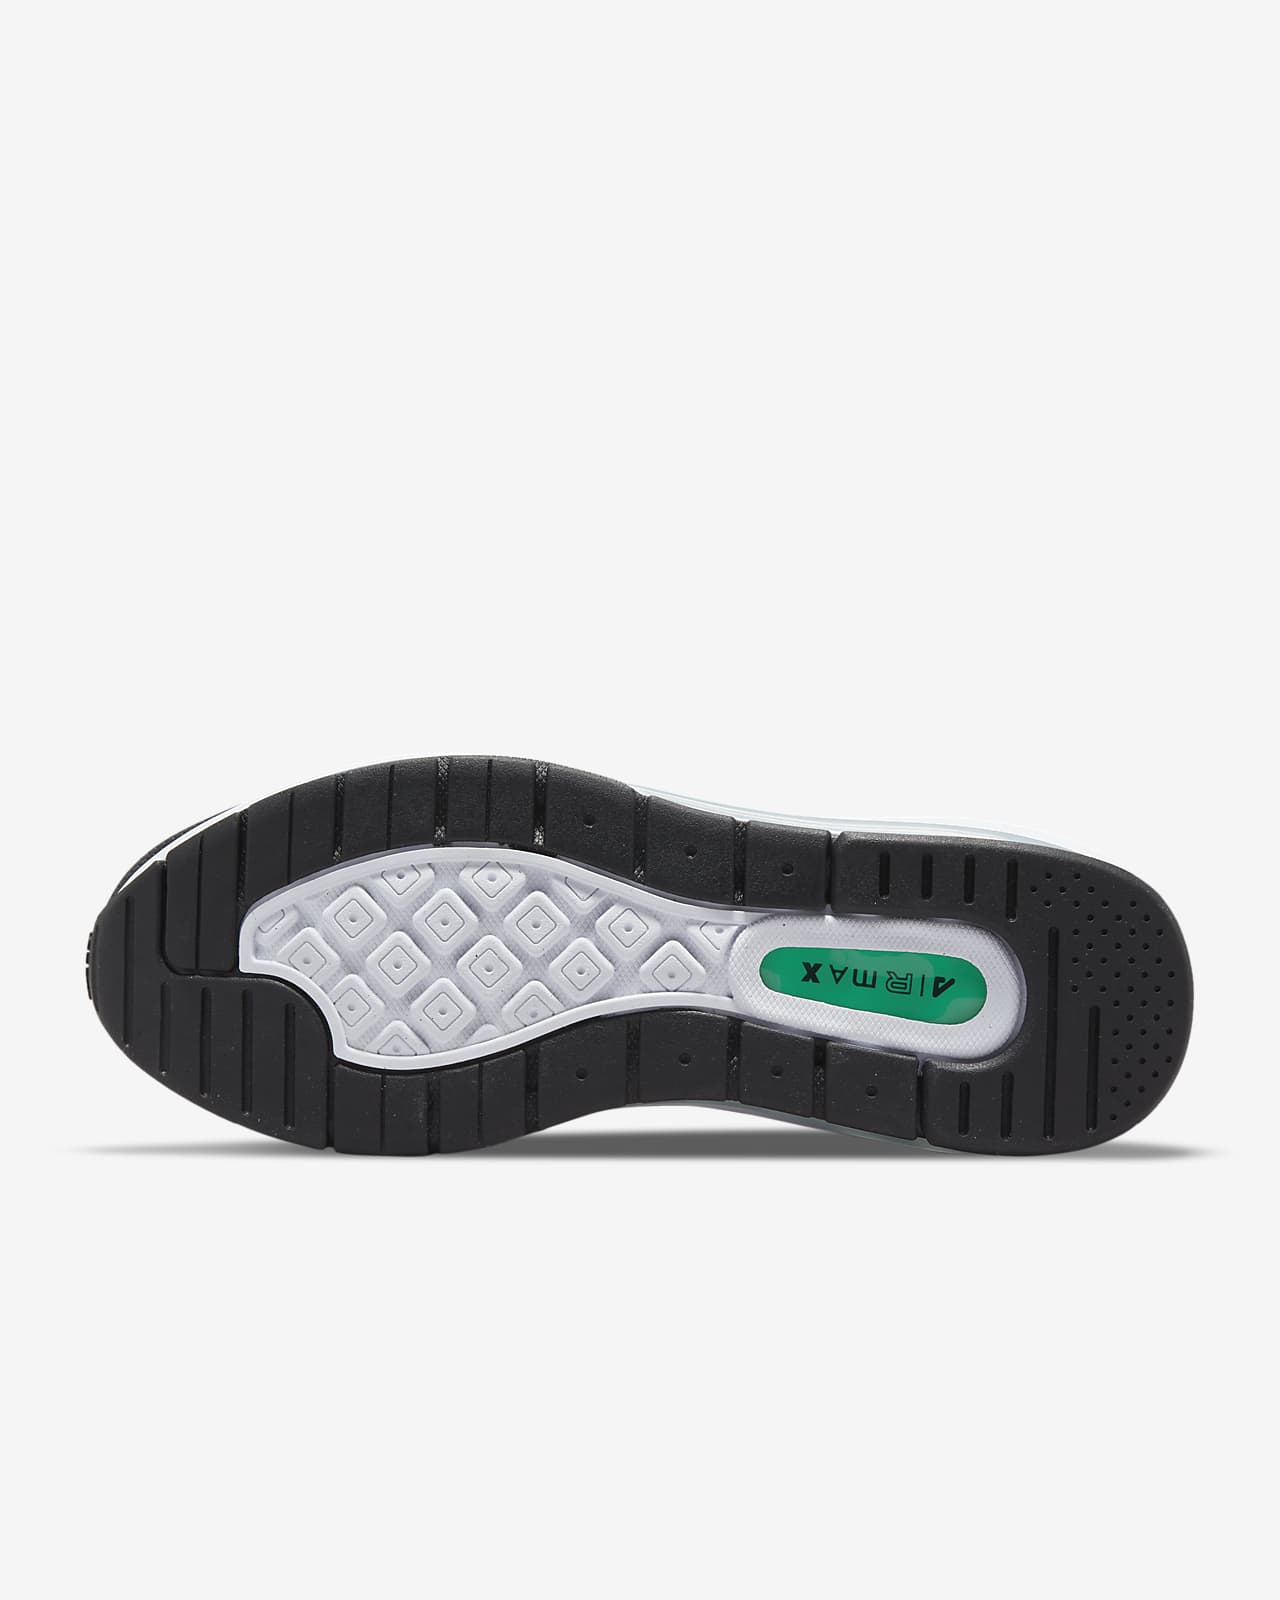 Calzado hombre Air Max Genome. Nike.com